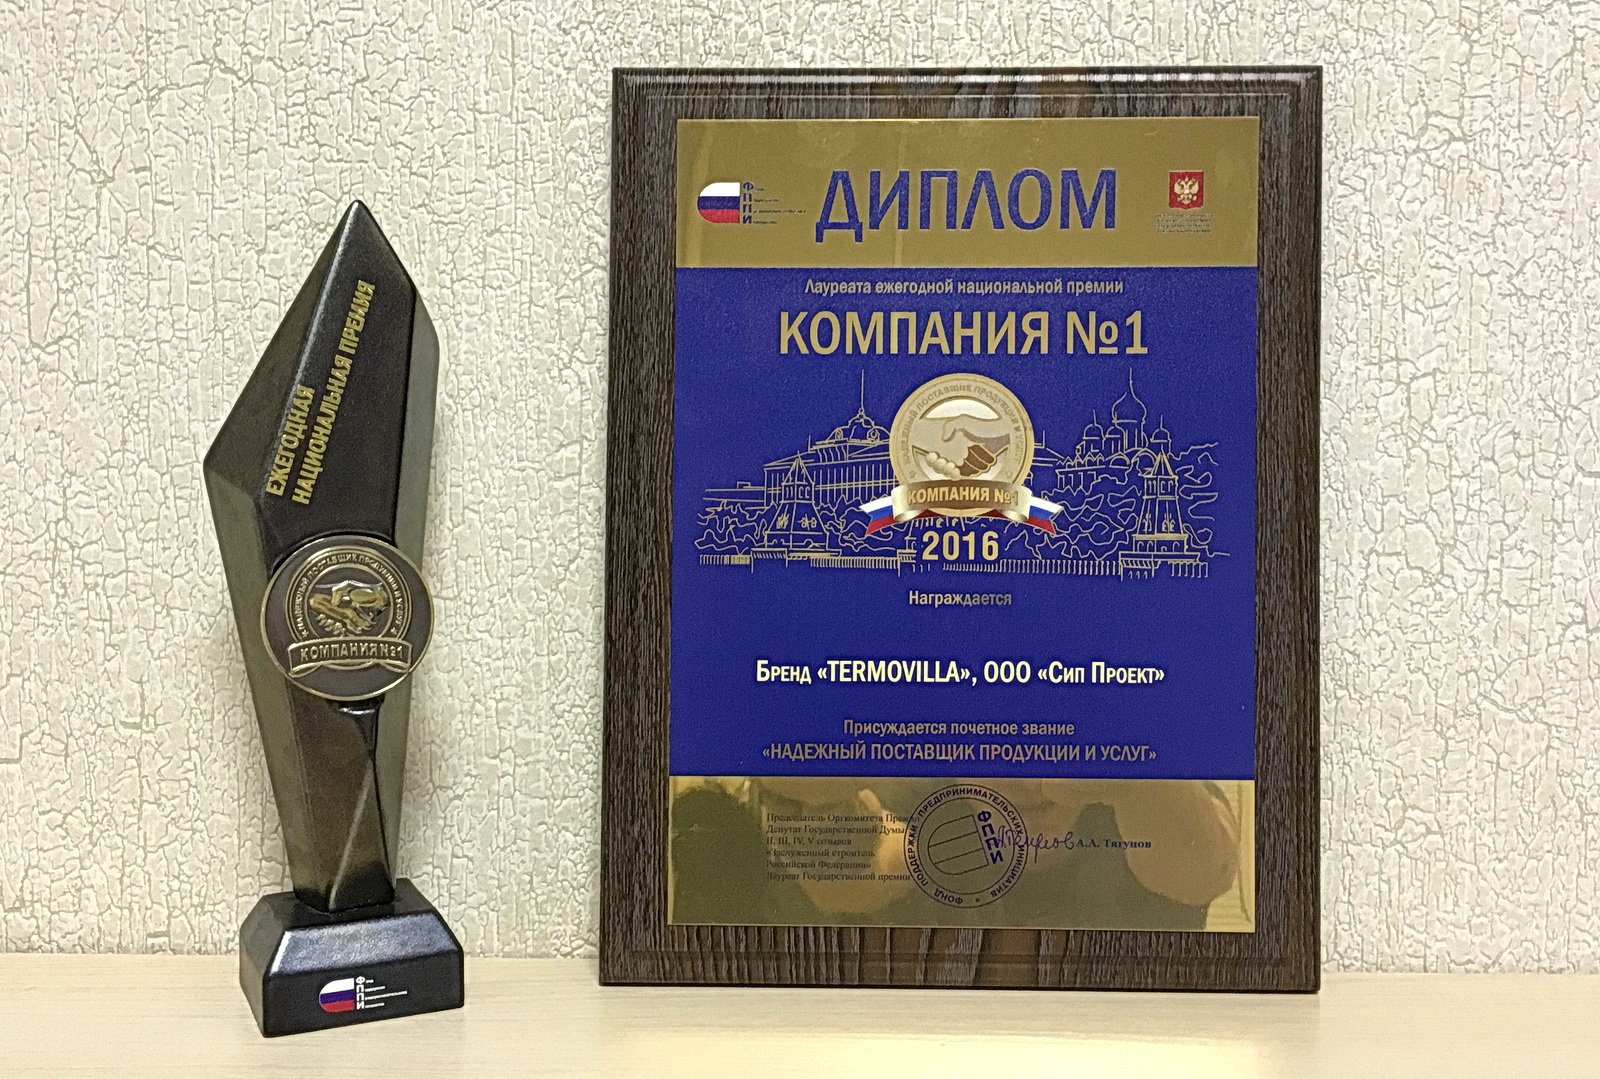 Ежегодная Национальная премия «КОМПАНИЯ №1» - 2016